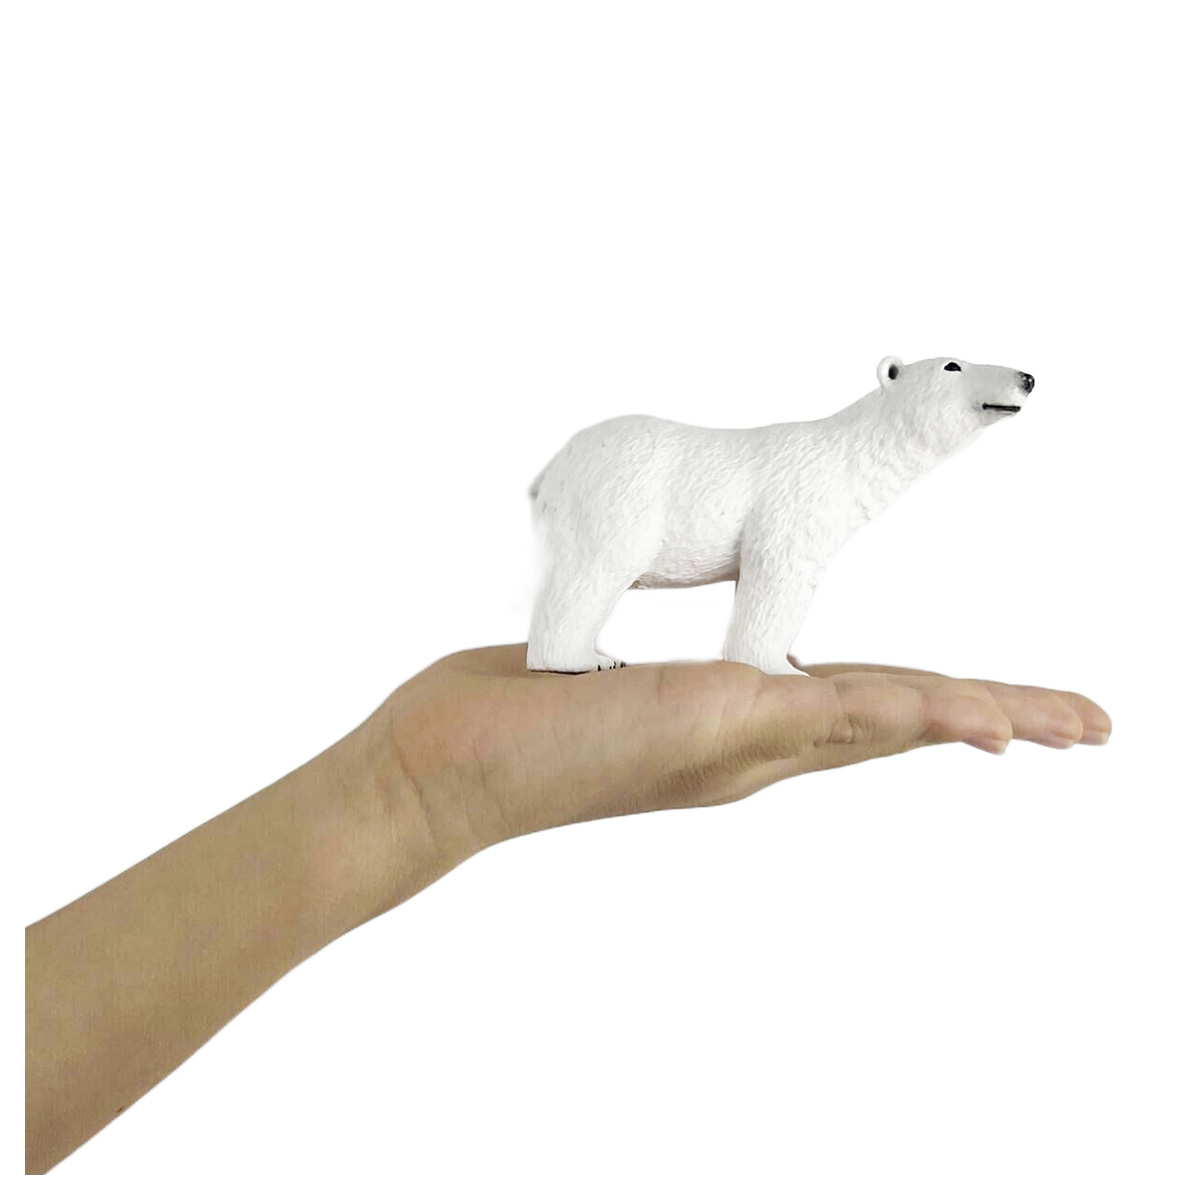 Декоративная фигурка Белый Медведь Итан 16 см